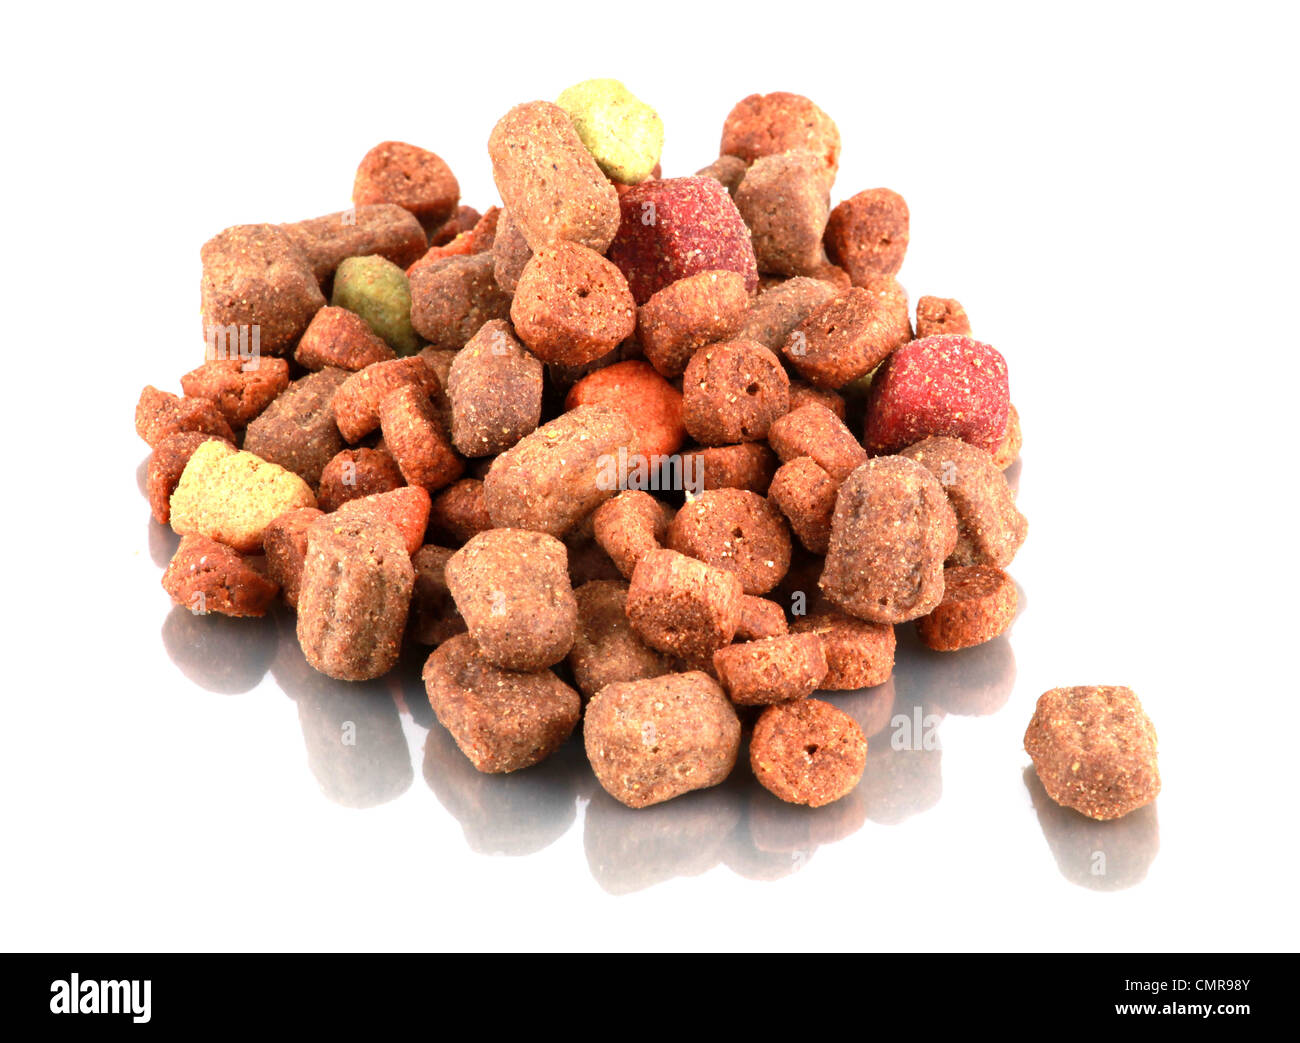 Dog food on white background. Stock Photo